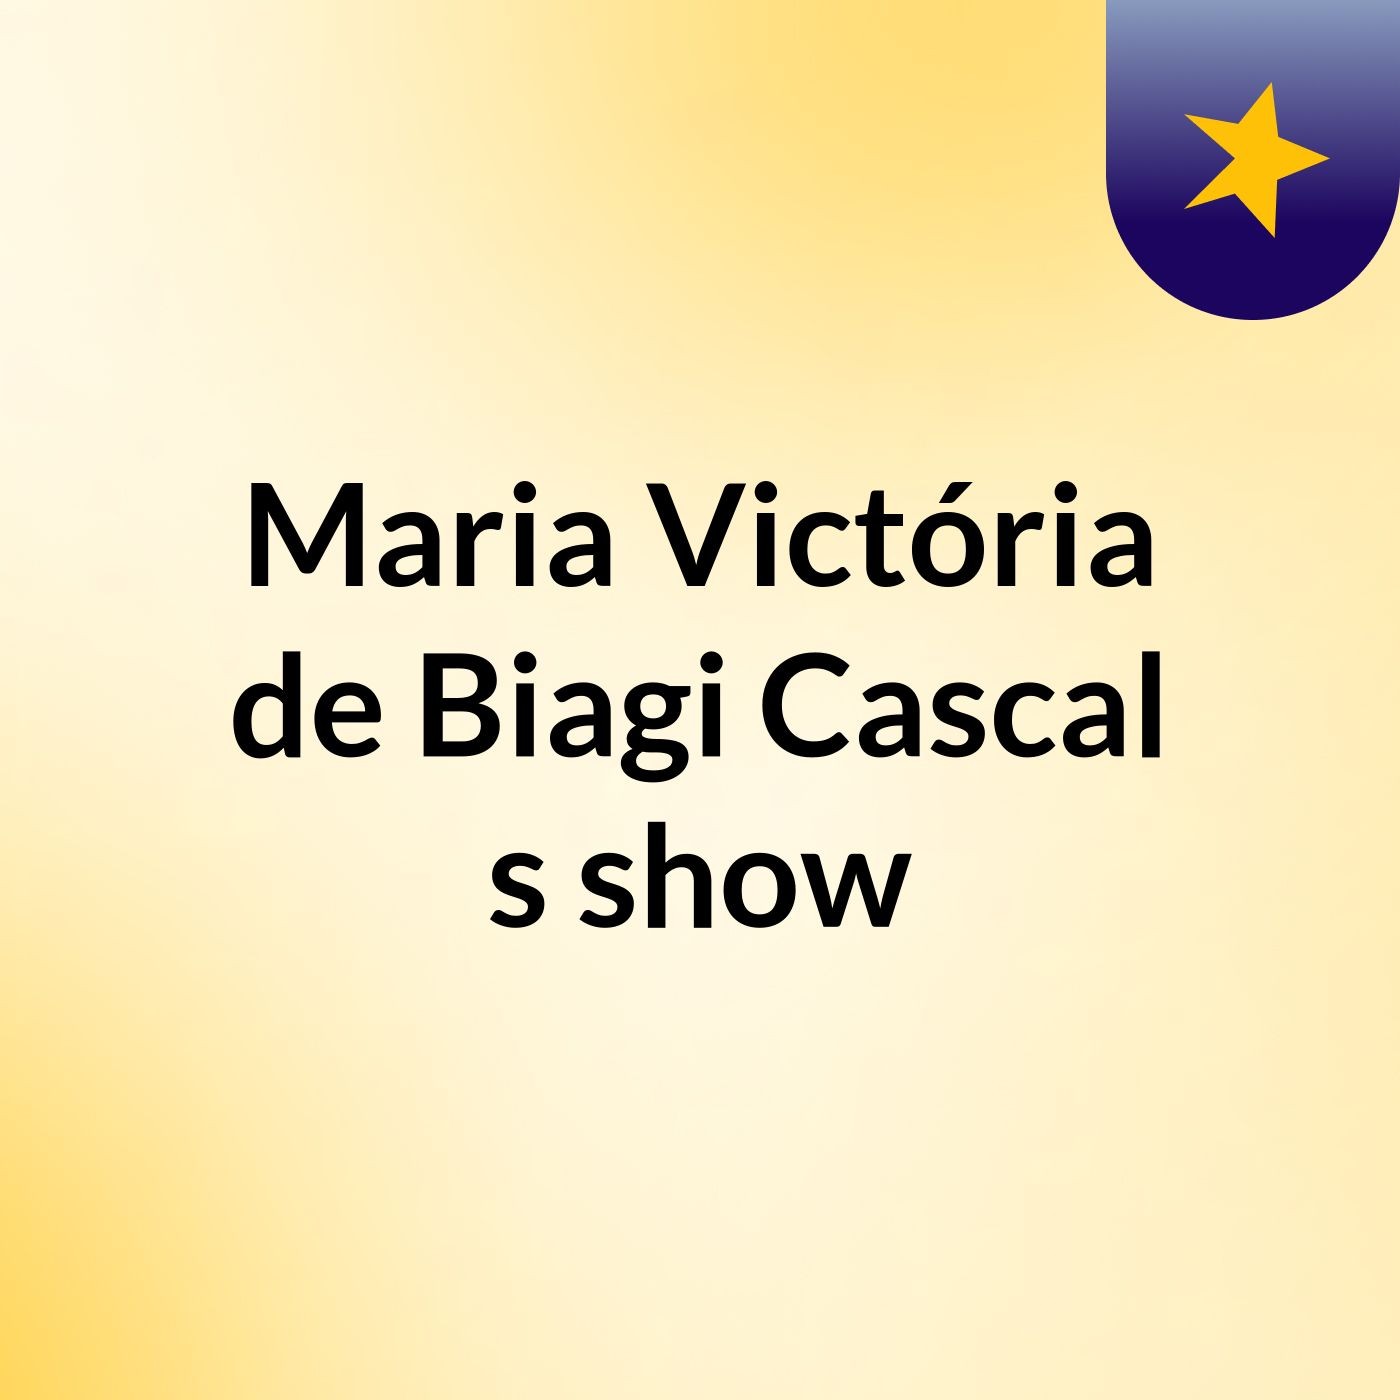 Maria Victória de Biagi Cascal's show